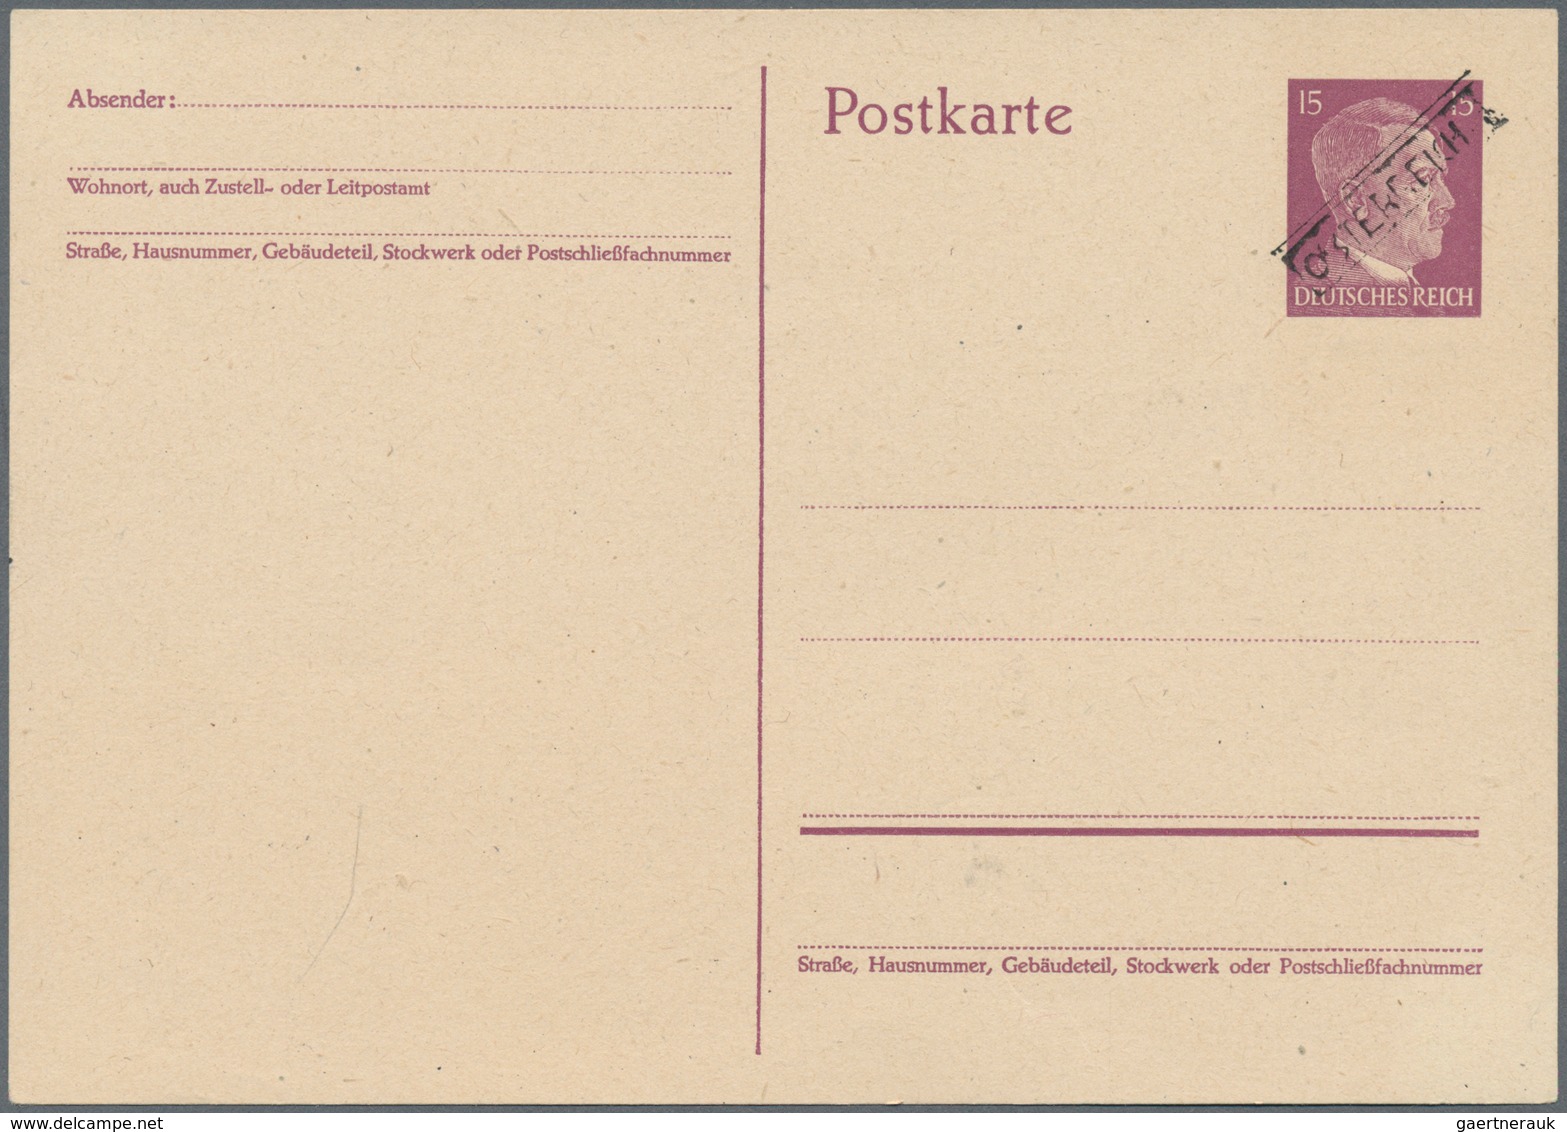 Österreich - Lokalausgaben 1945 - Senftenberg: 1945, SENFTENBERG: sechs Hitler-Postkarten dabei 2 x